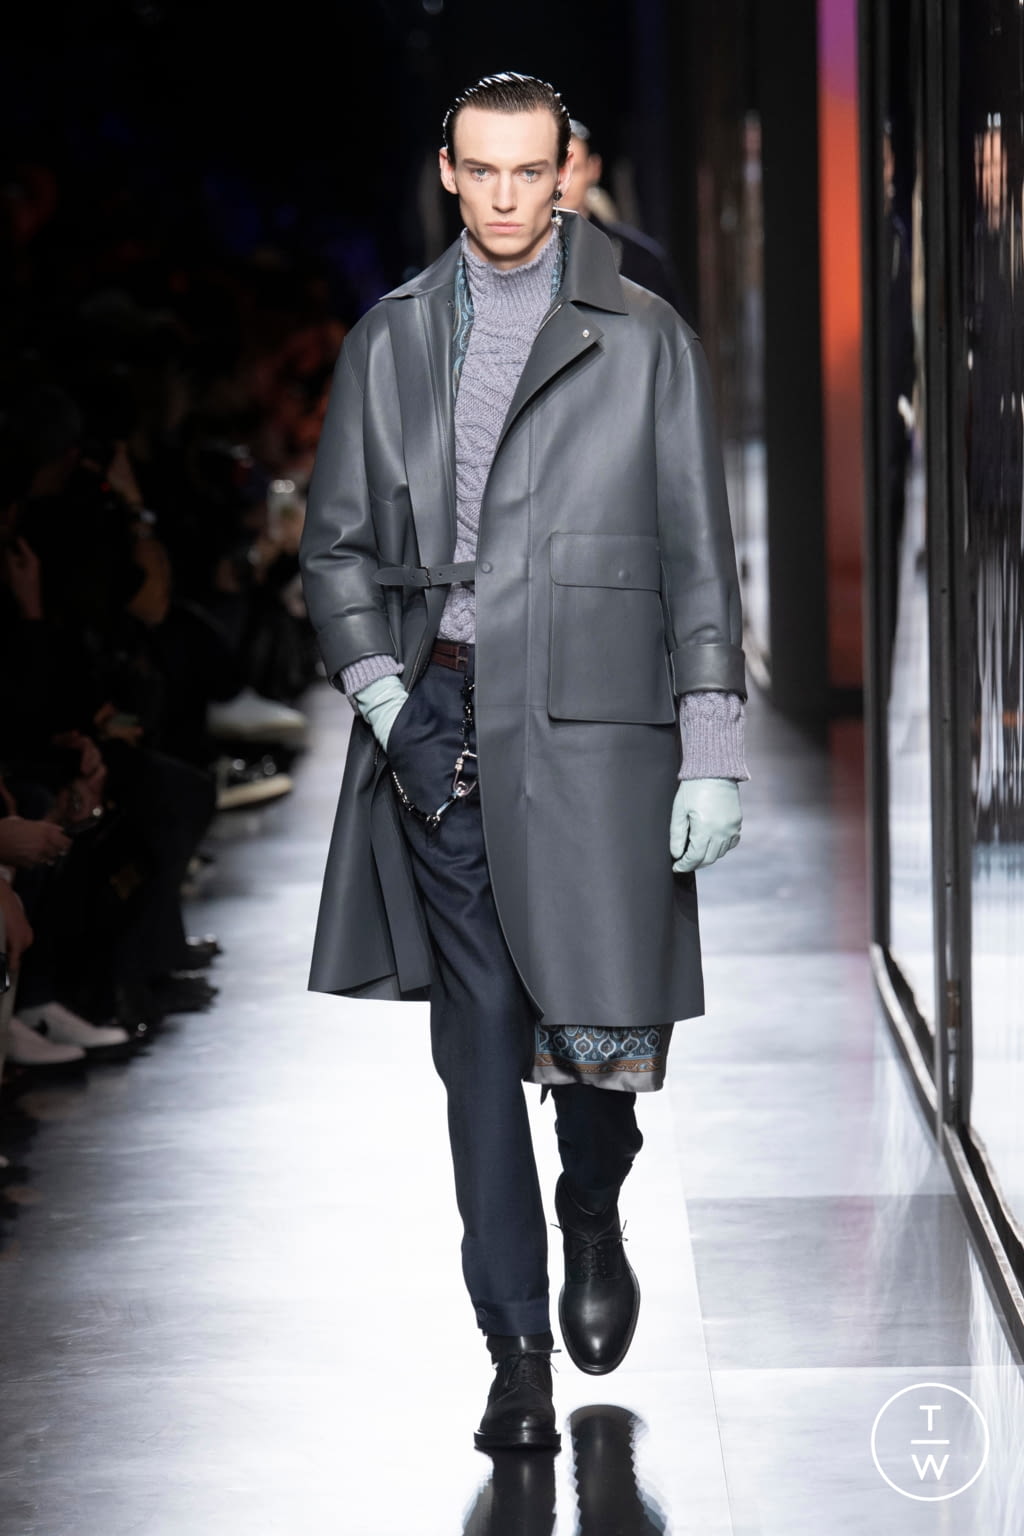 Dior Men FW20 menswear #30 - Tagwalk: The Fashion Search Engine